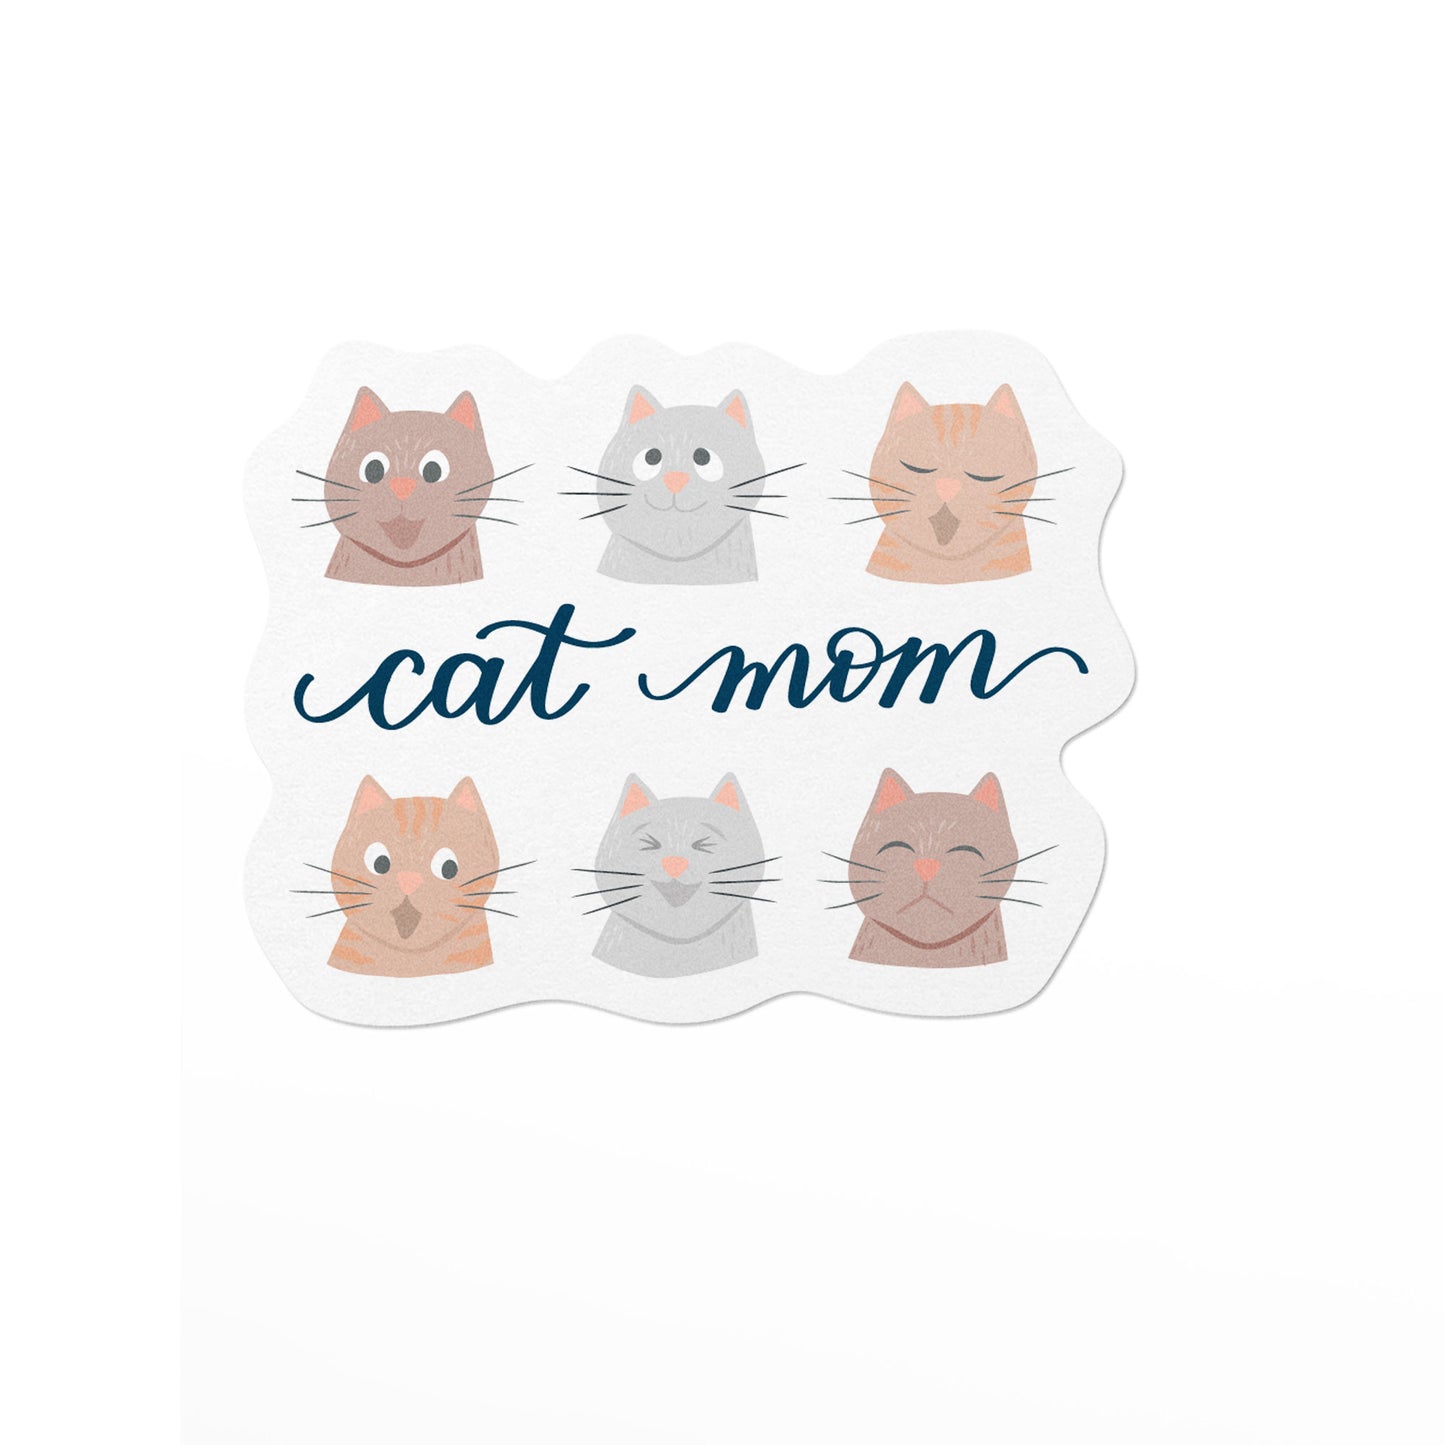 Cat Mom Vinyl Sticker